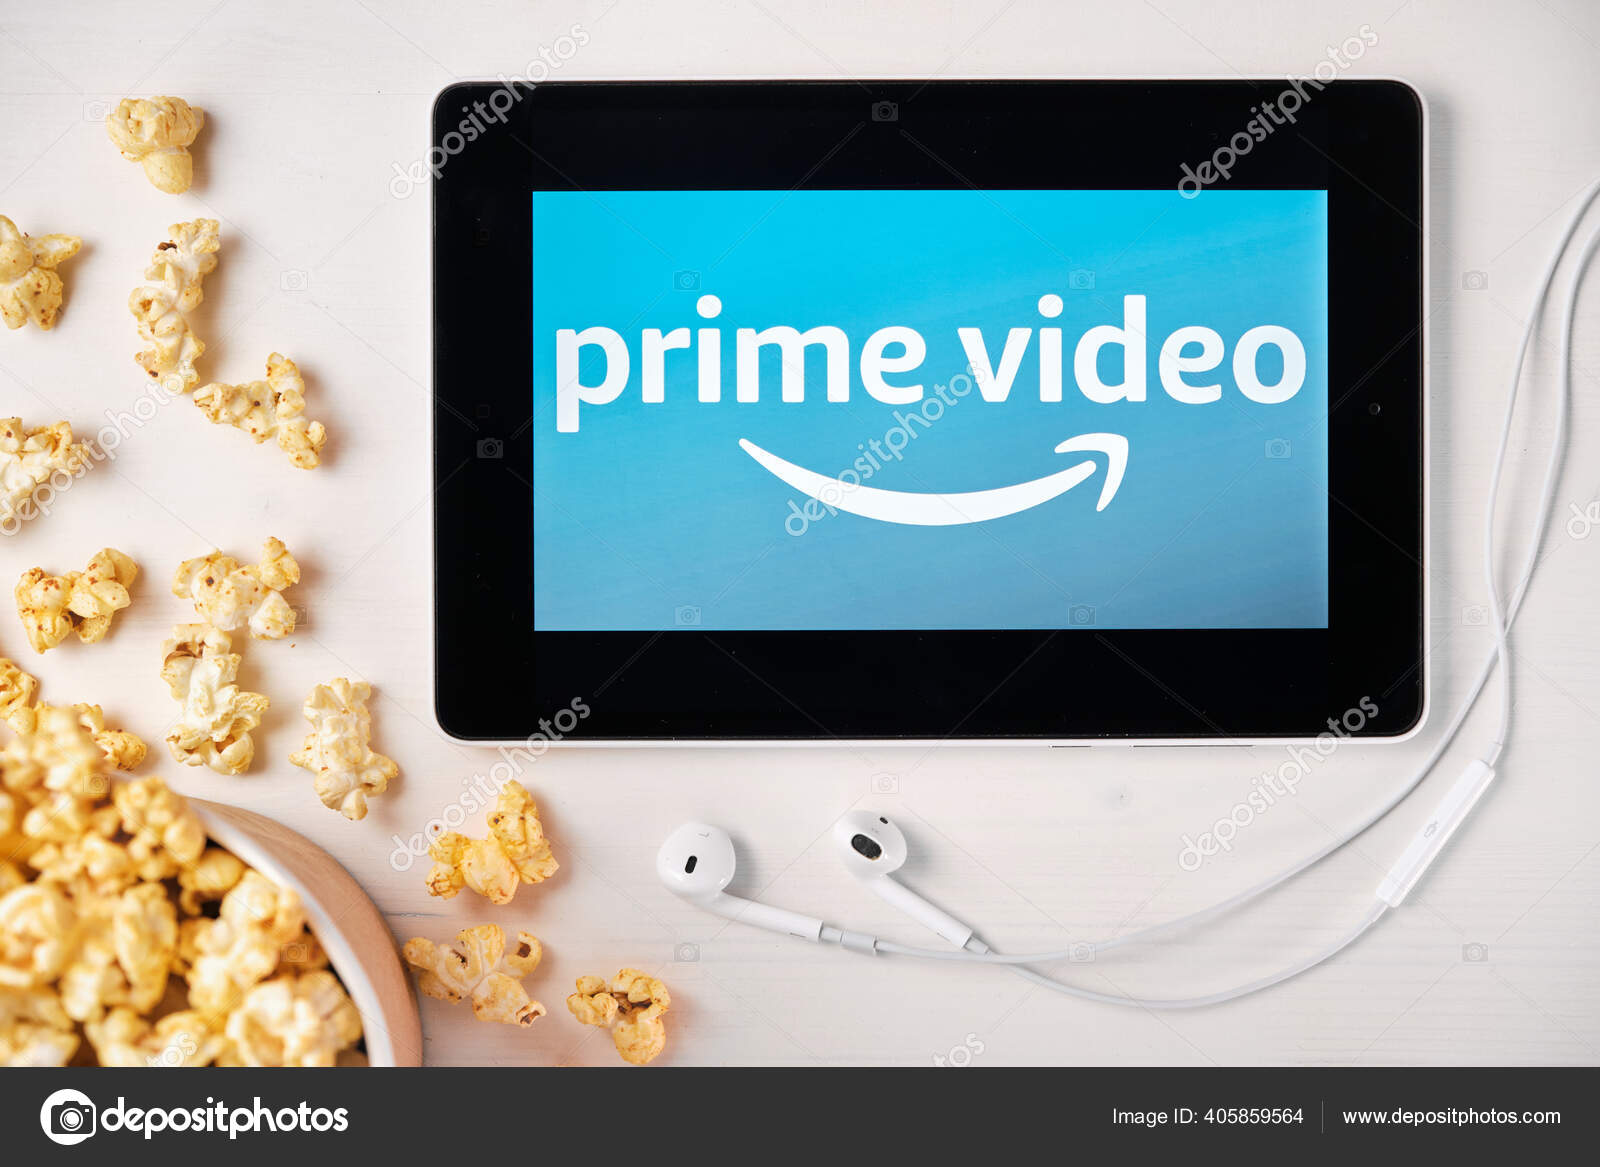 Amazon Prime Video Stock Photos Royalty Free Amazon Prime Video Images Depositphotos